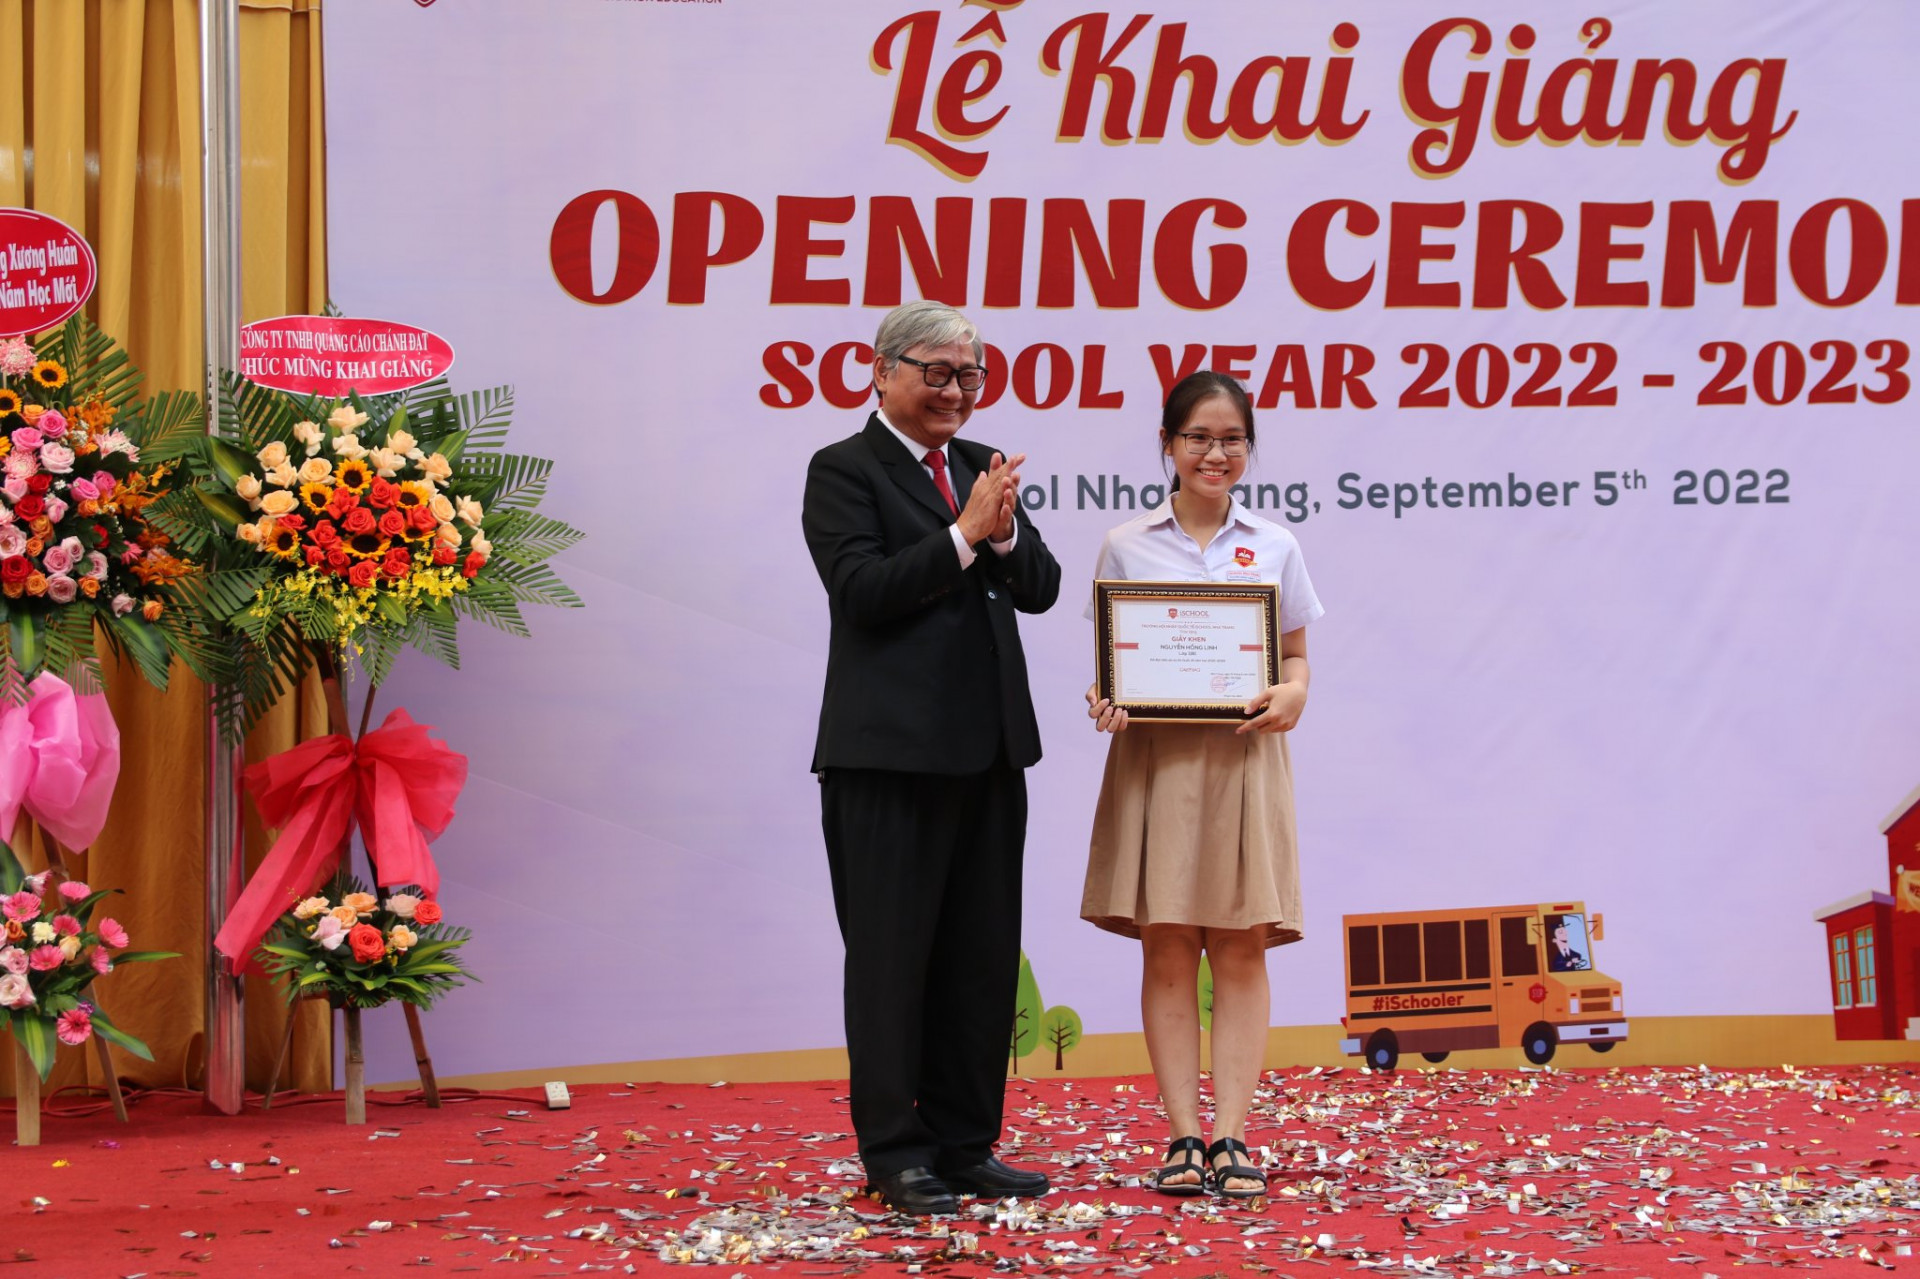 Thầy Phạm Hữu Bình – Hiệu trưởng nhà trường khen thưởng cho học sinh đạt giải quốc tế.